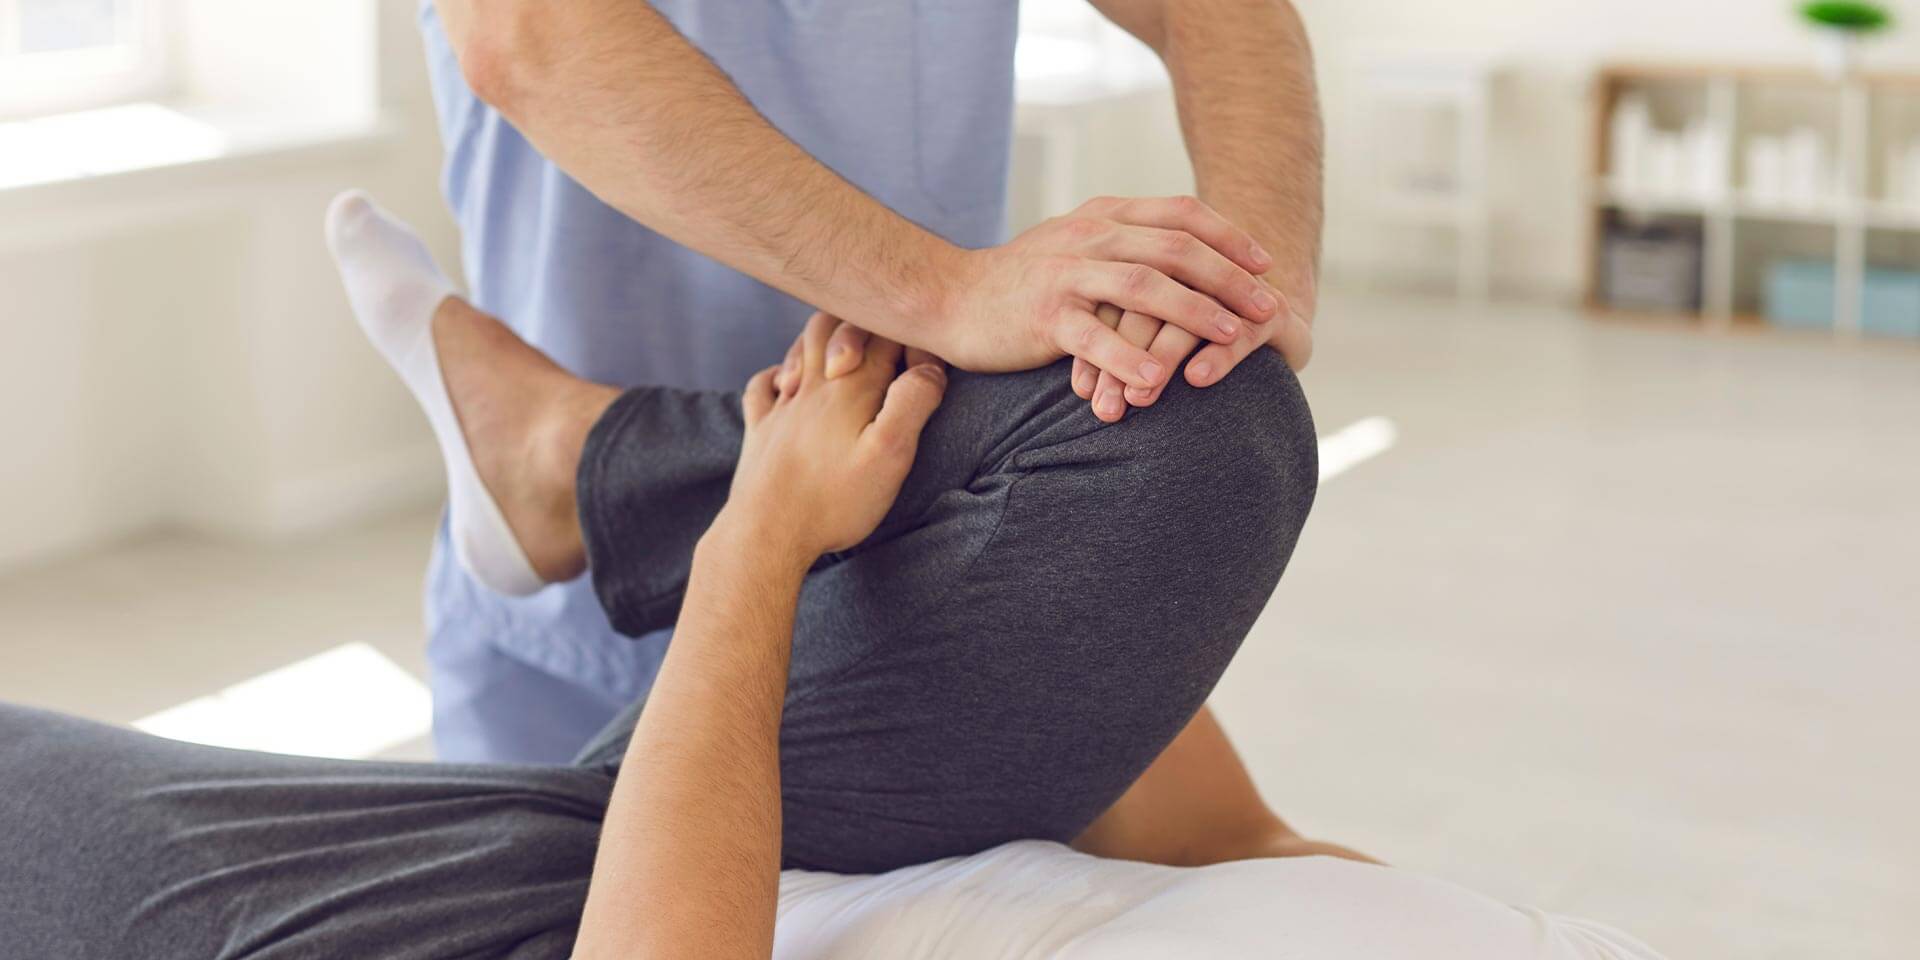 Physiotherapeut, der das Bein eines Patienten massiert und knetet. Konzept der Rehabilitation und Erholung nach Verletzungen der Beine.